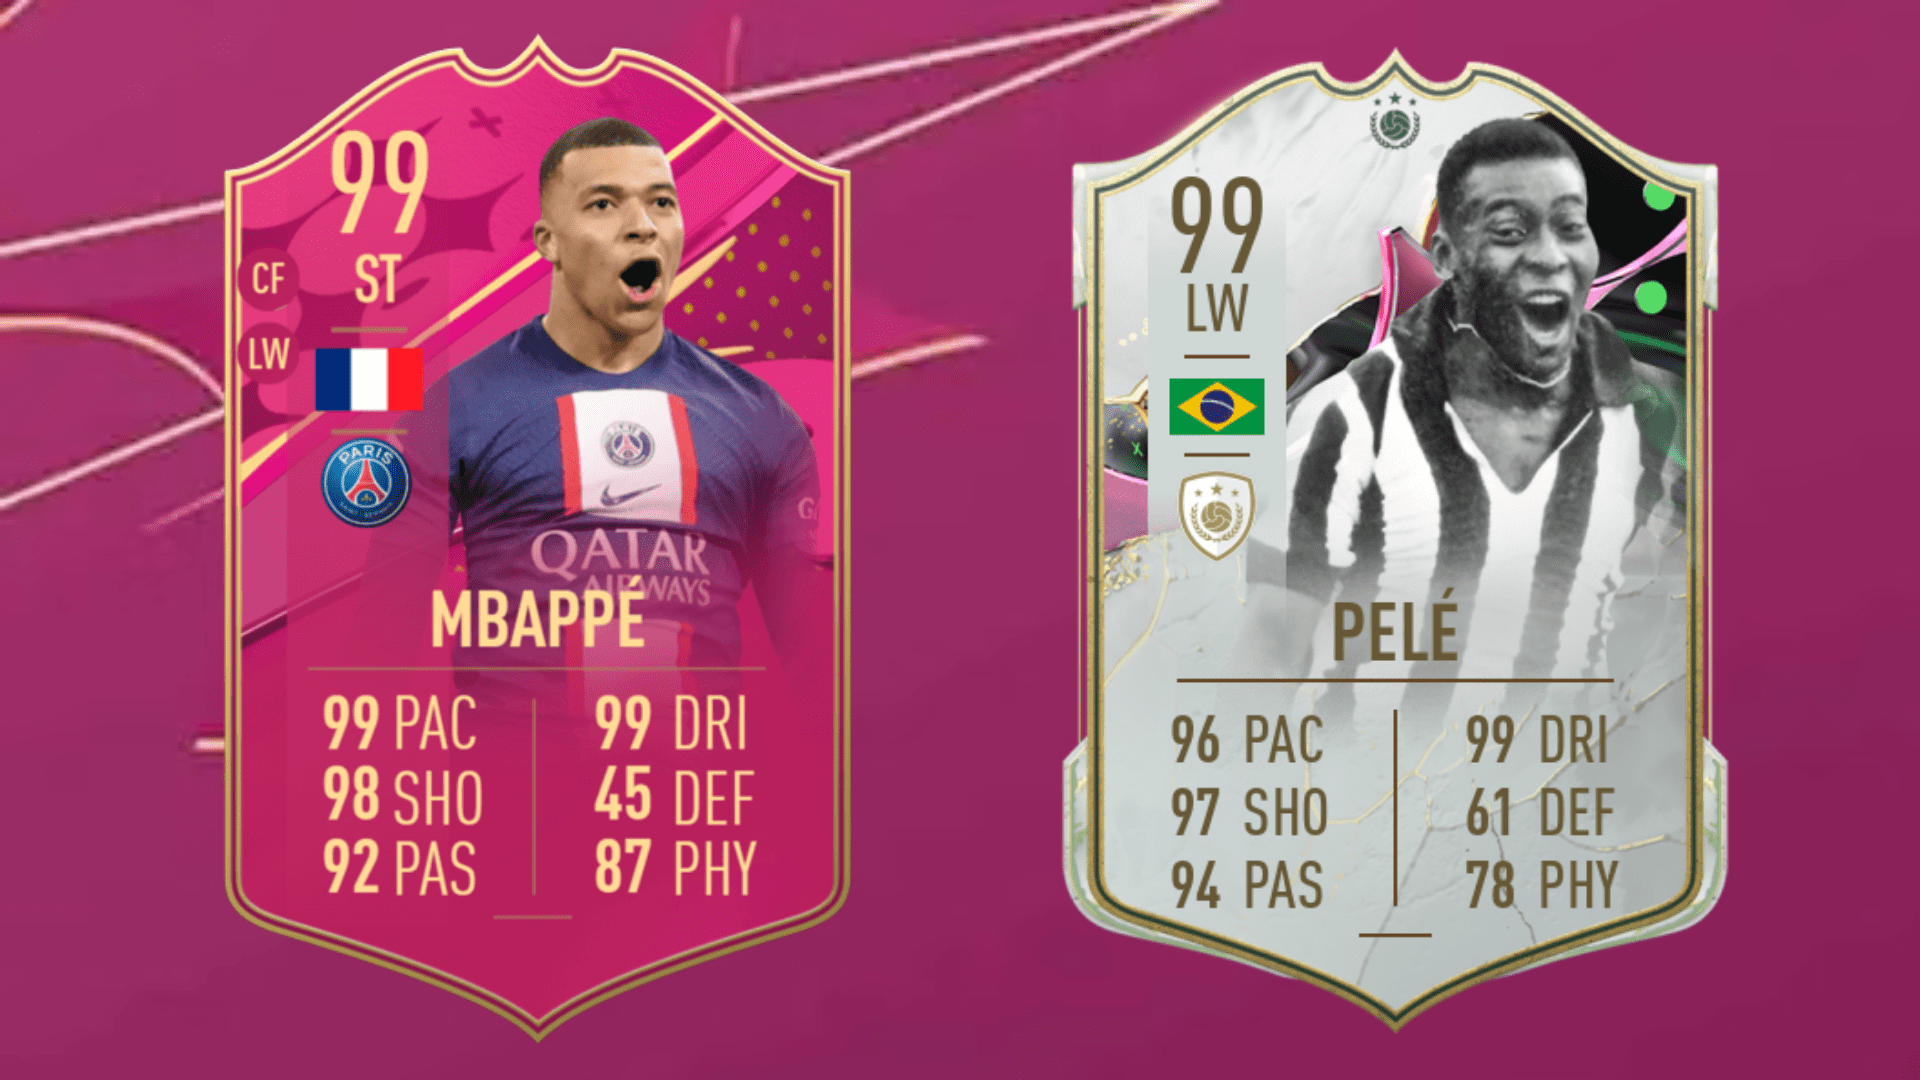 Capa de EA Sports FC, sucessor do FIFA, tem Pelé e mais ídolos do